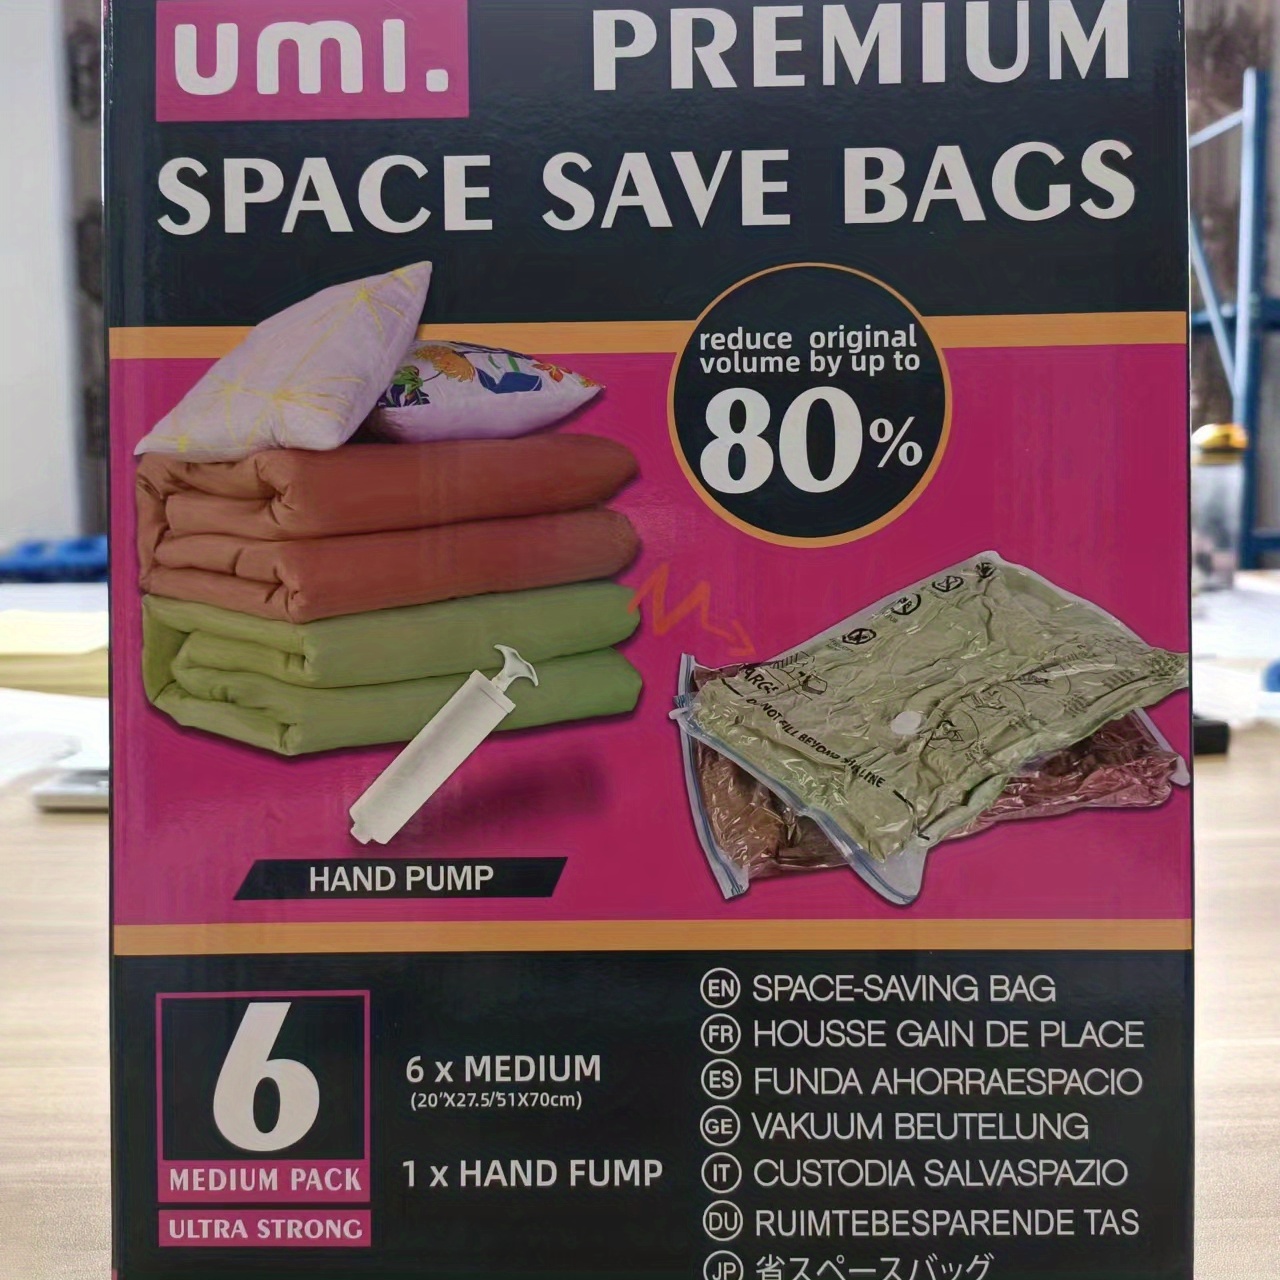 12 PACK vacuum storage bags variety pack, Lyfe seal, space saver